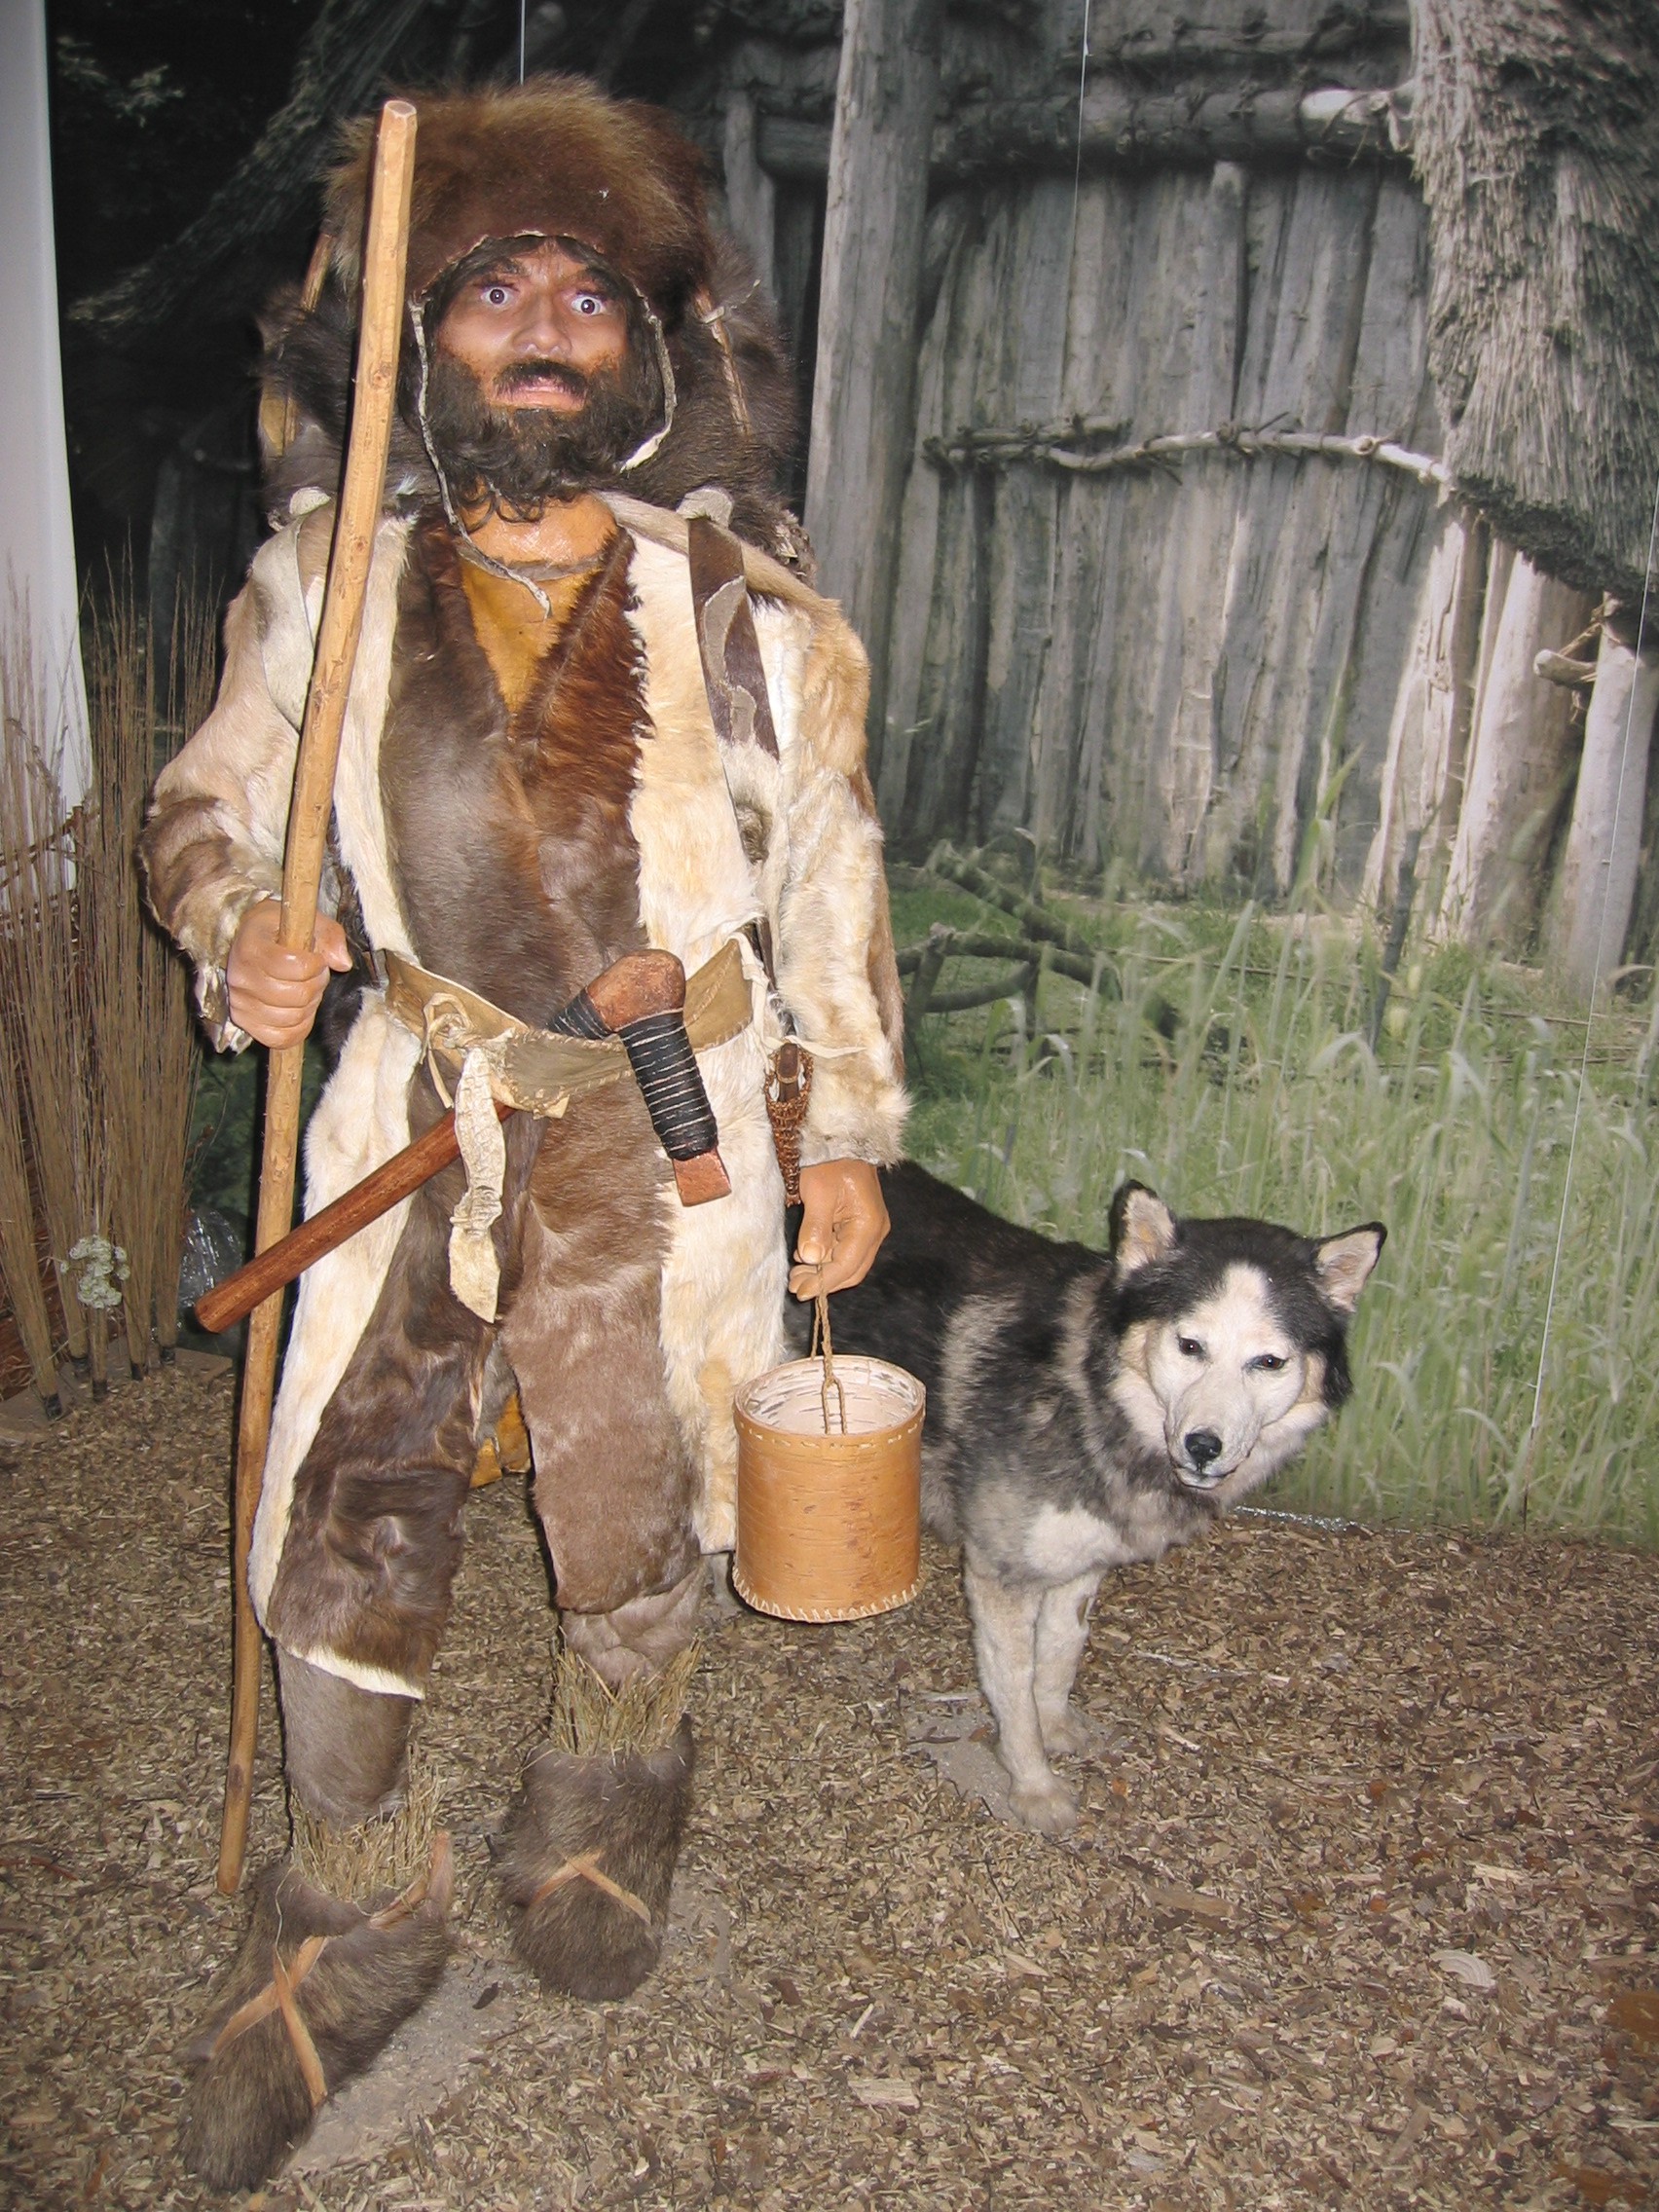 Ötzi, in Fell gekleidet, in Begleitung eines Hundes